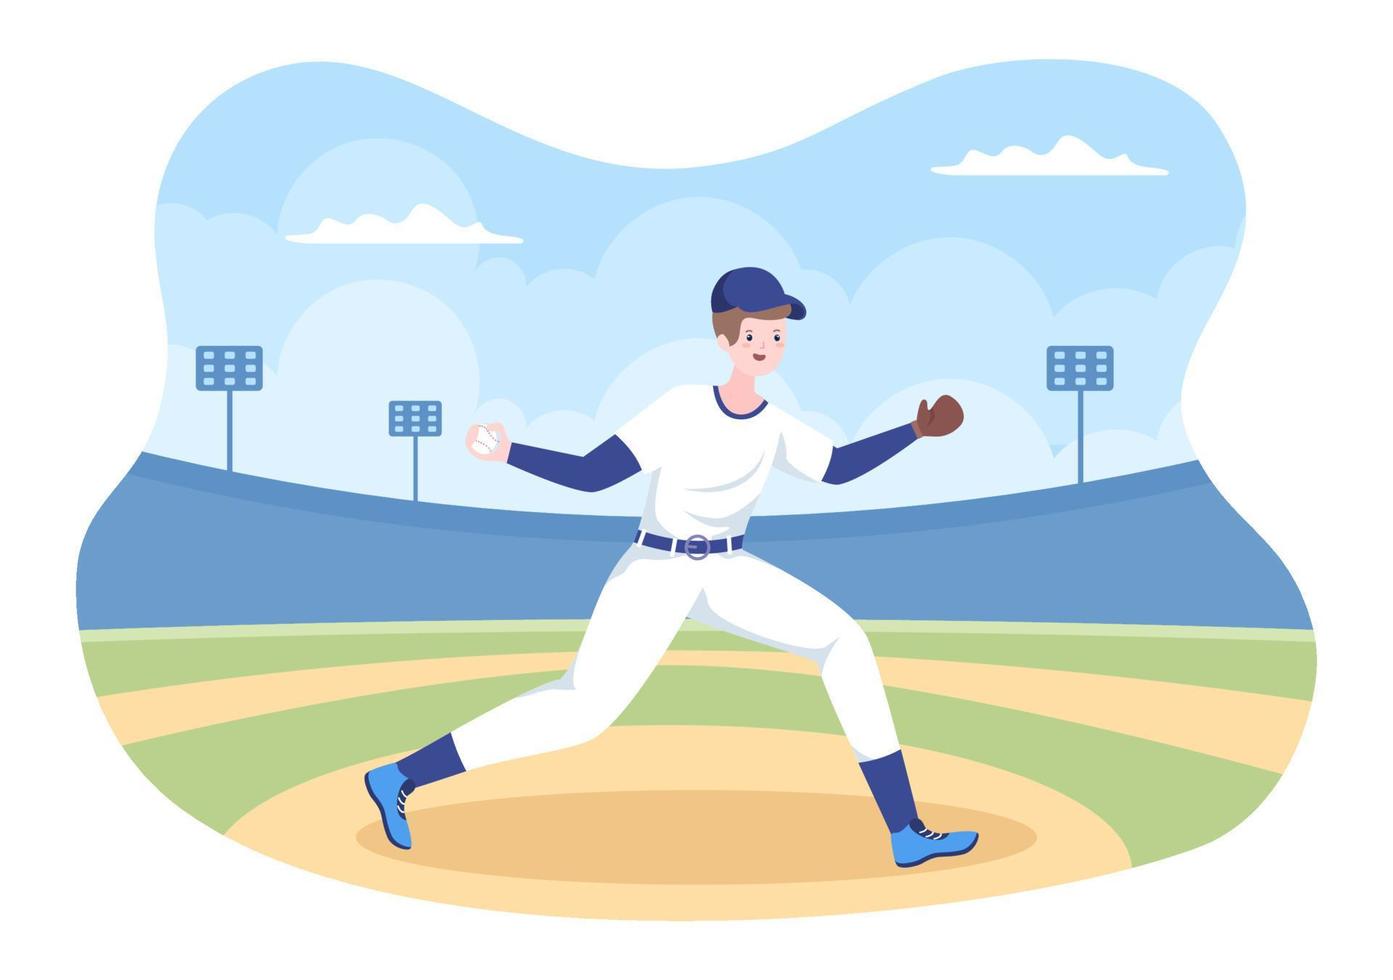 esportes de jogador de beisebol jogando, pegando ou batendo uma bola com bastões e luvas vestindo uniforme no estádio da quadra em ilustração plana dos desenhos animados vetor